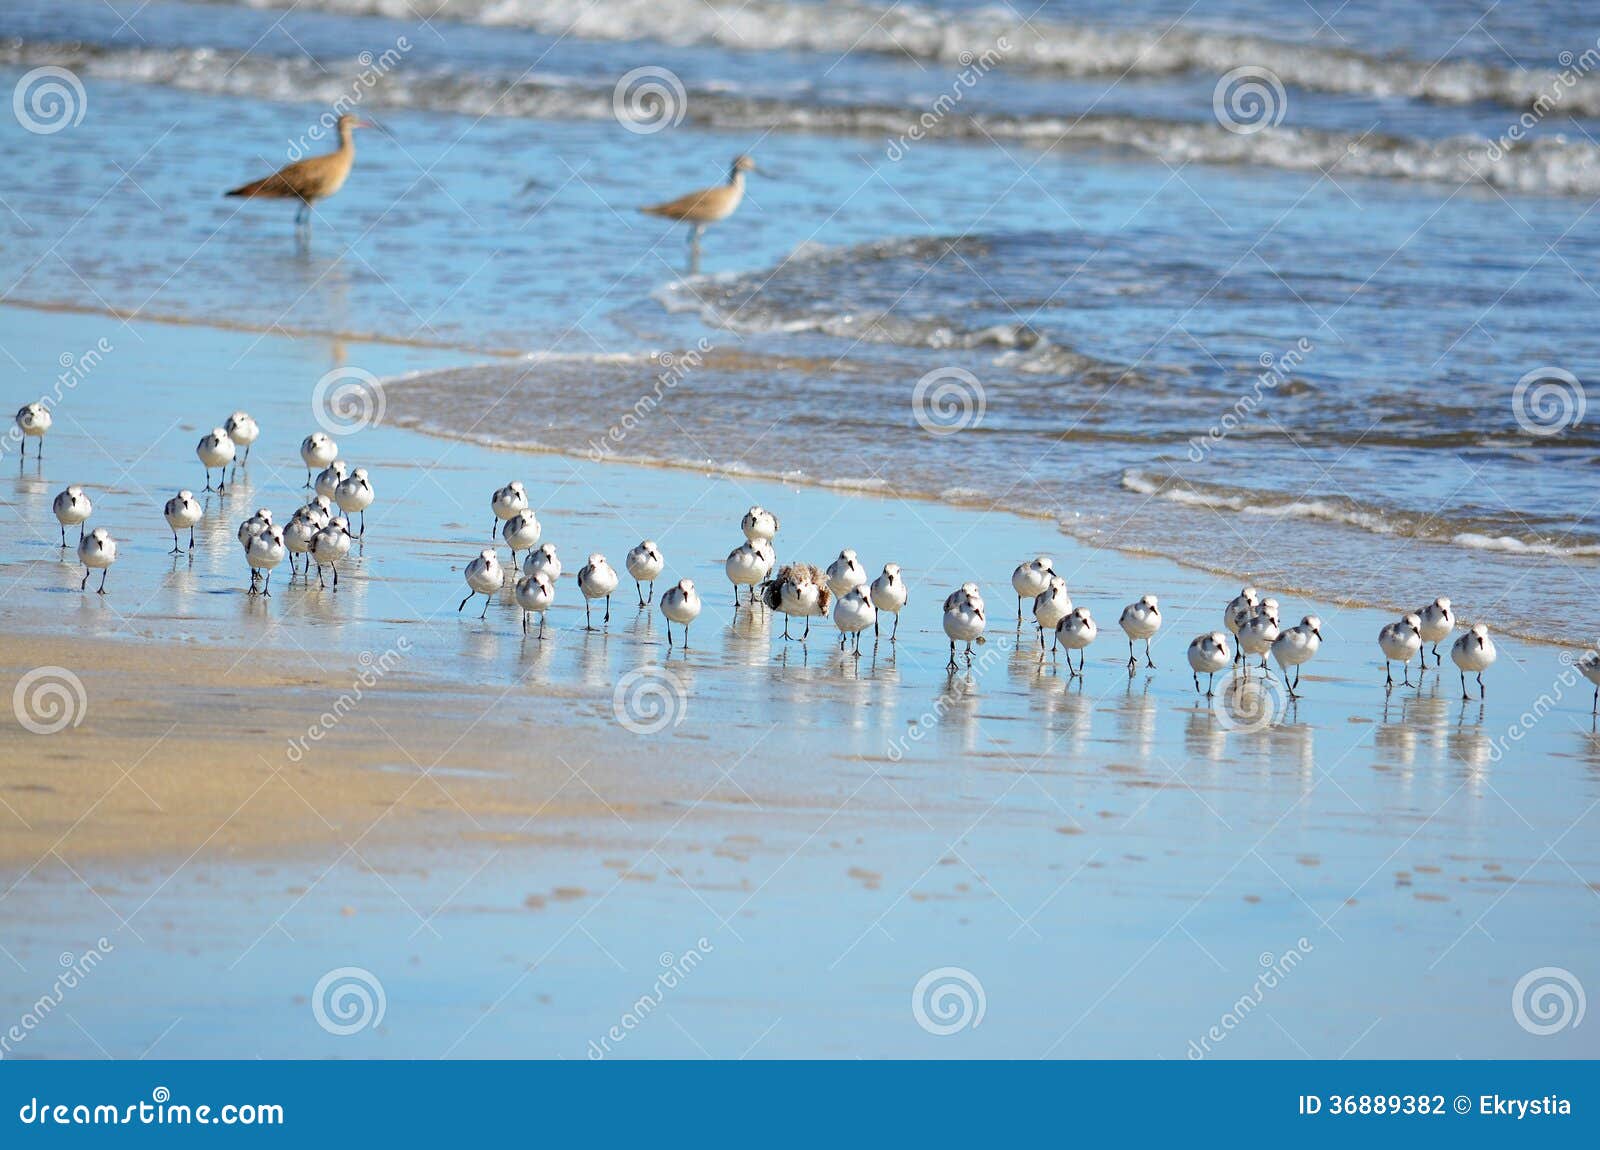 birds fishing, playa el espino